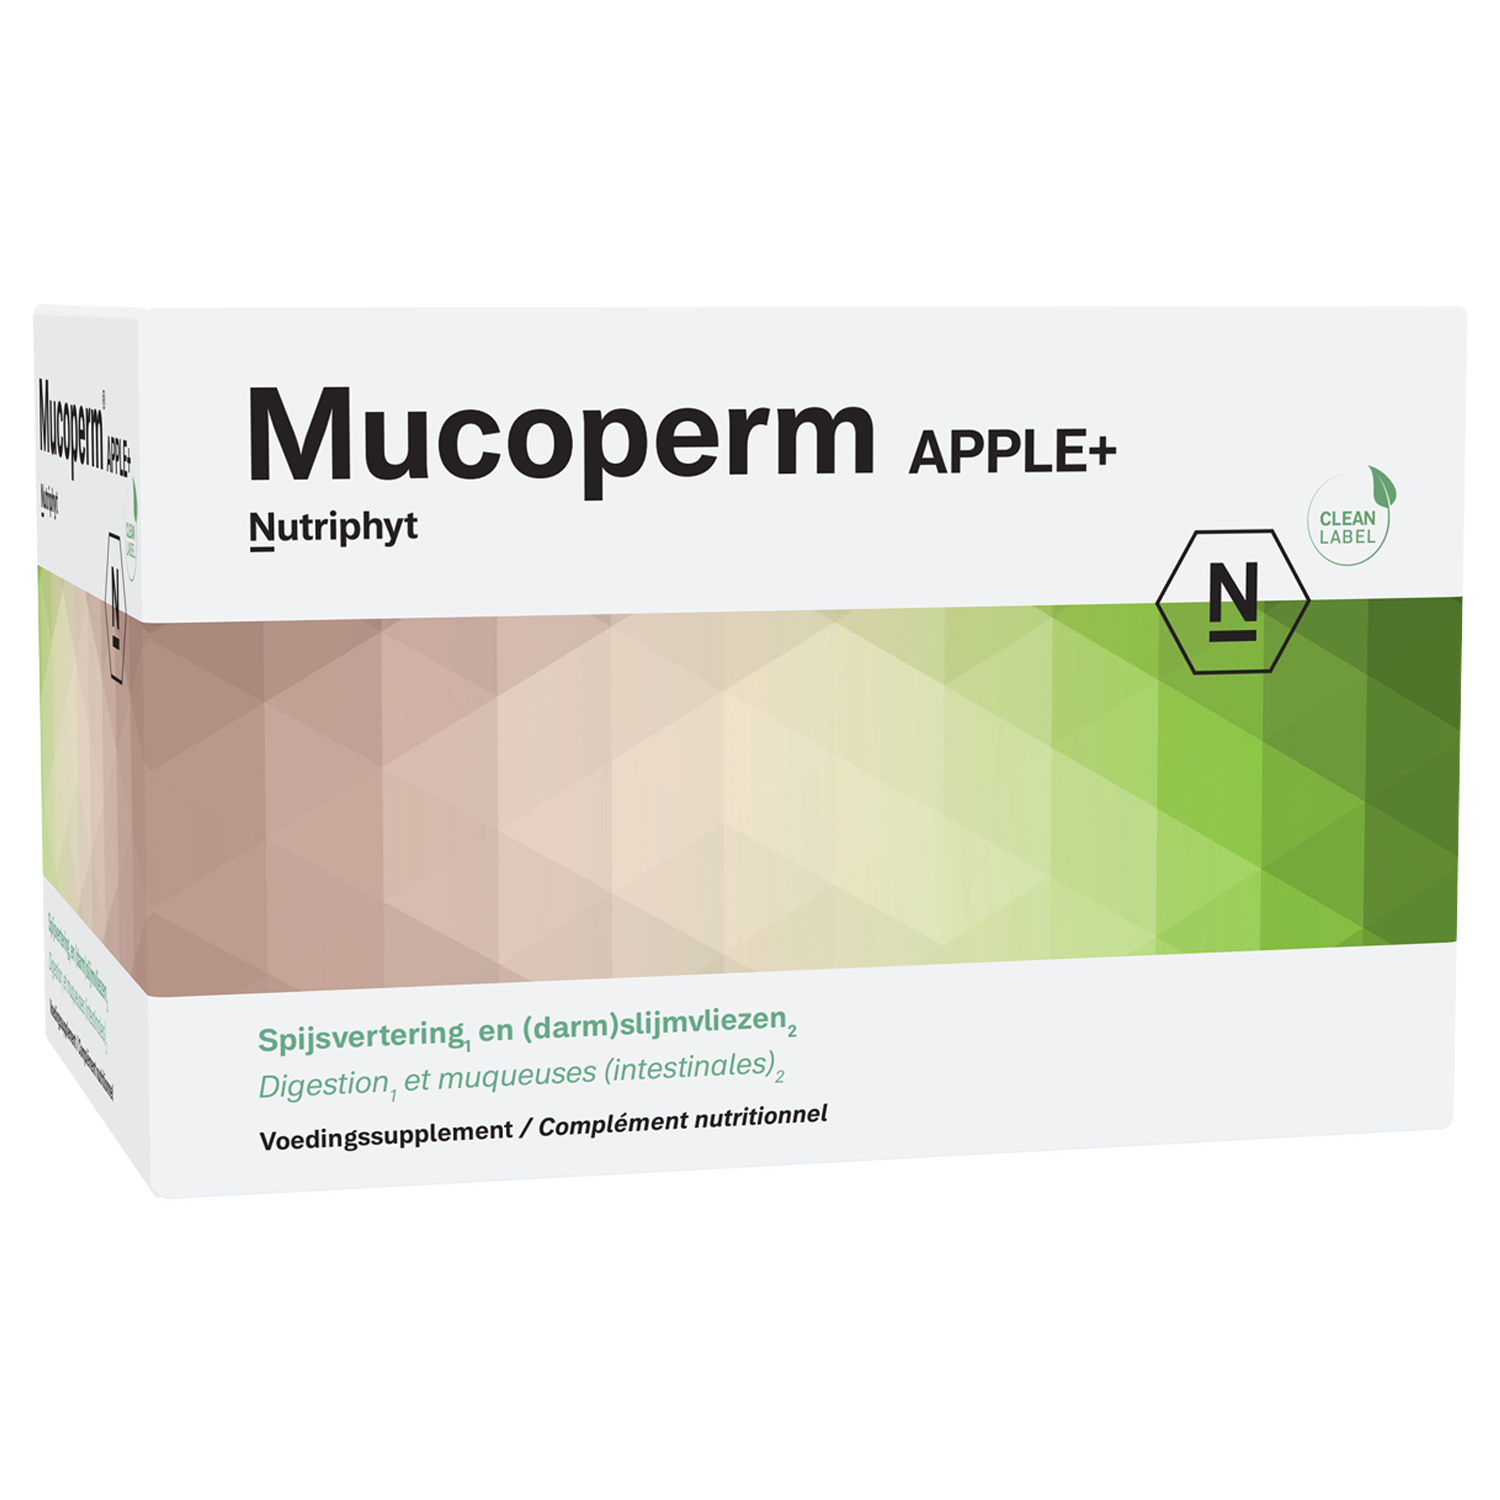 Mucoperm apple+ - 60 sachets